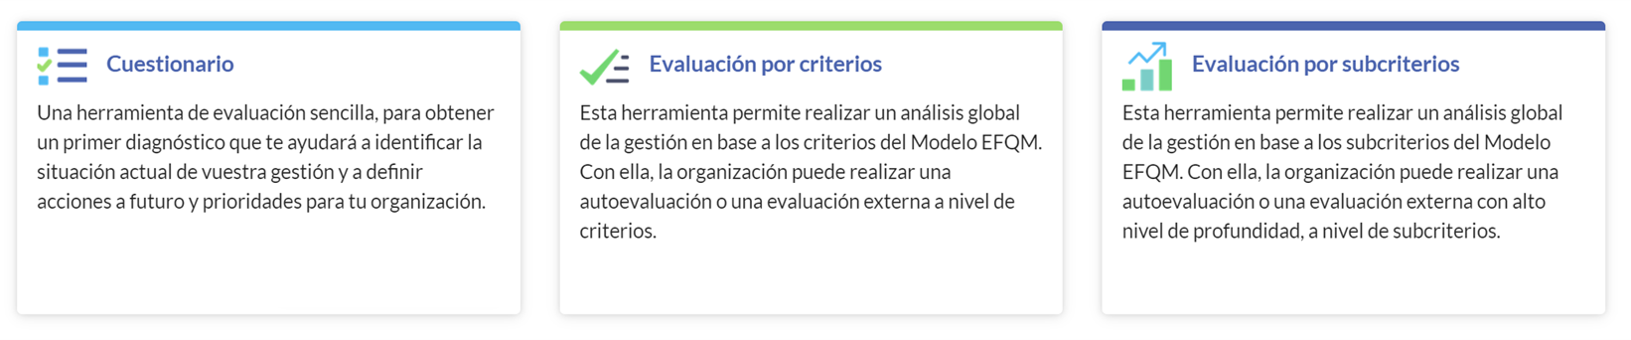 Niveles_Plataforma_de_Evaluación_EFQM_Digital